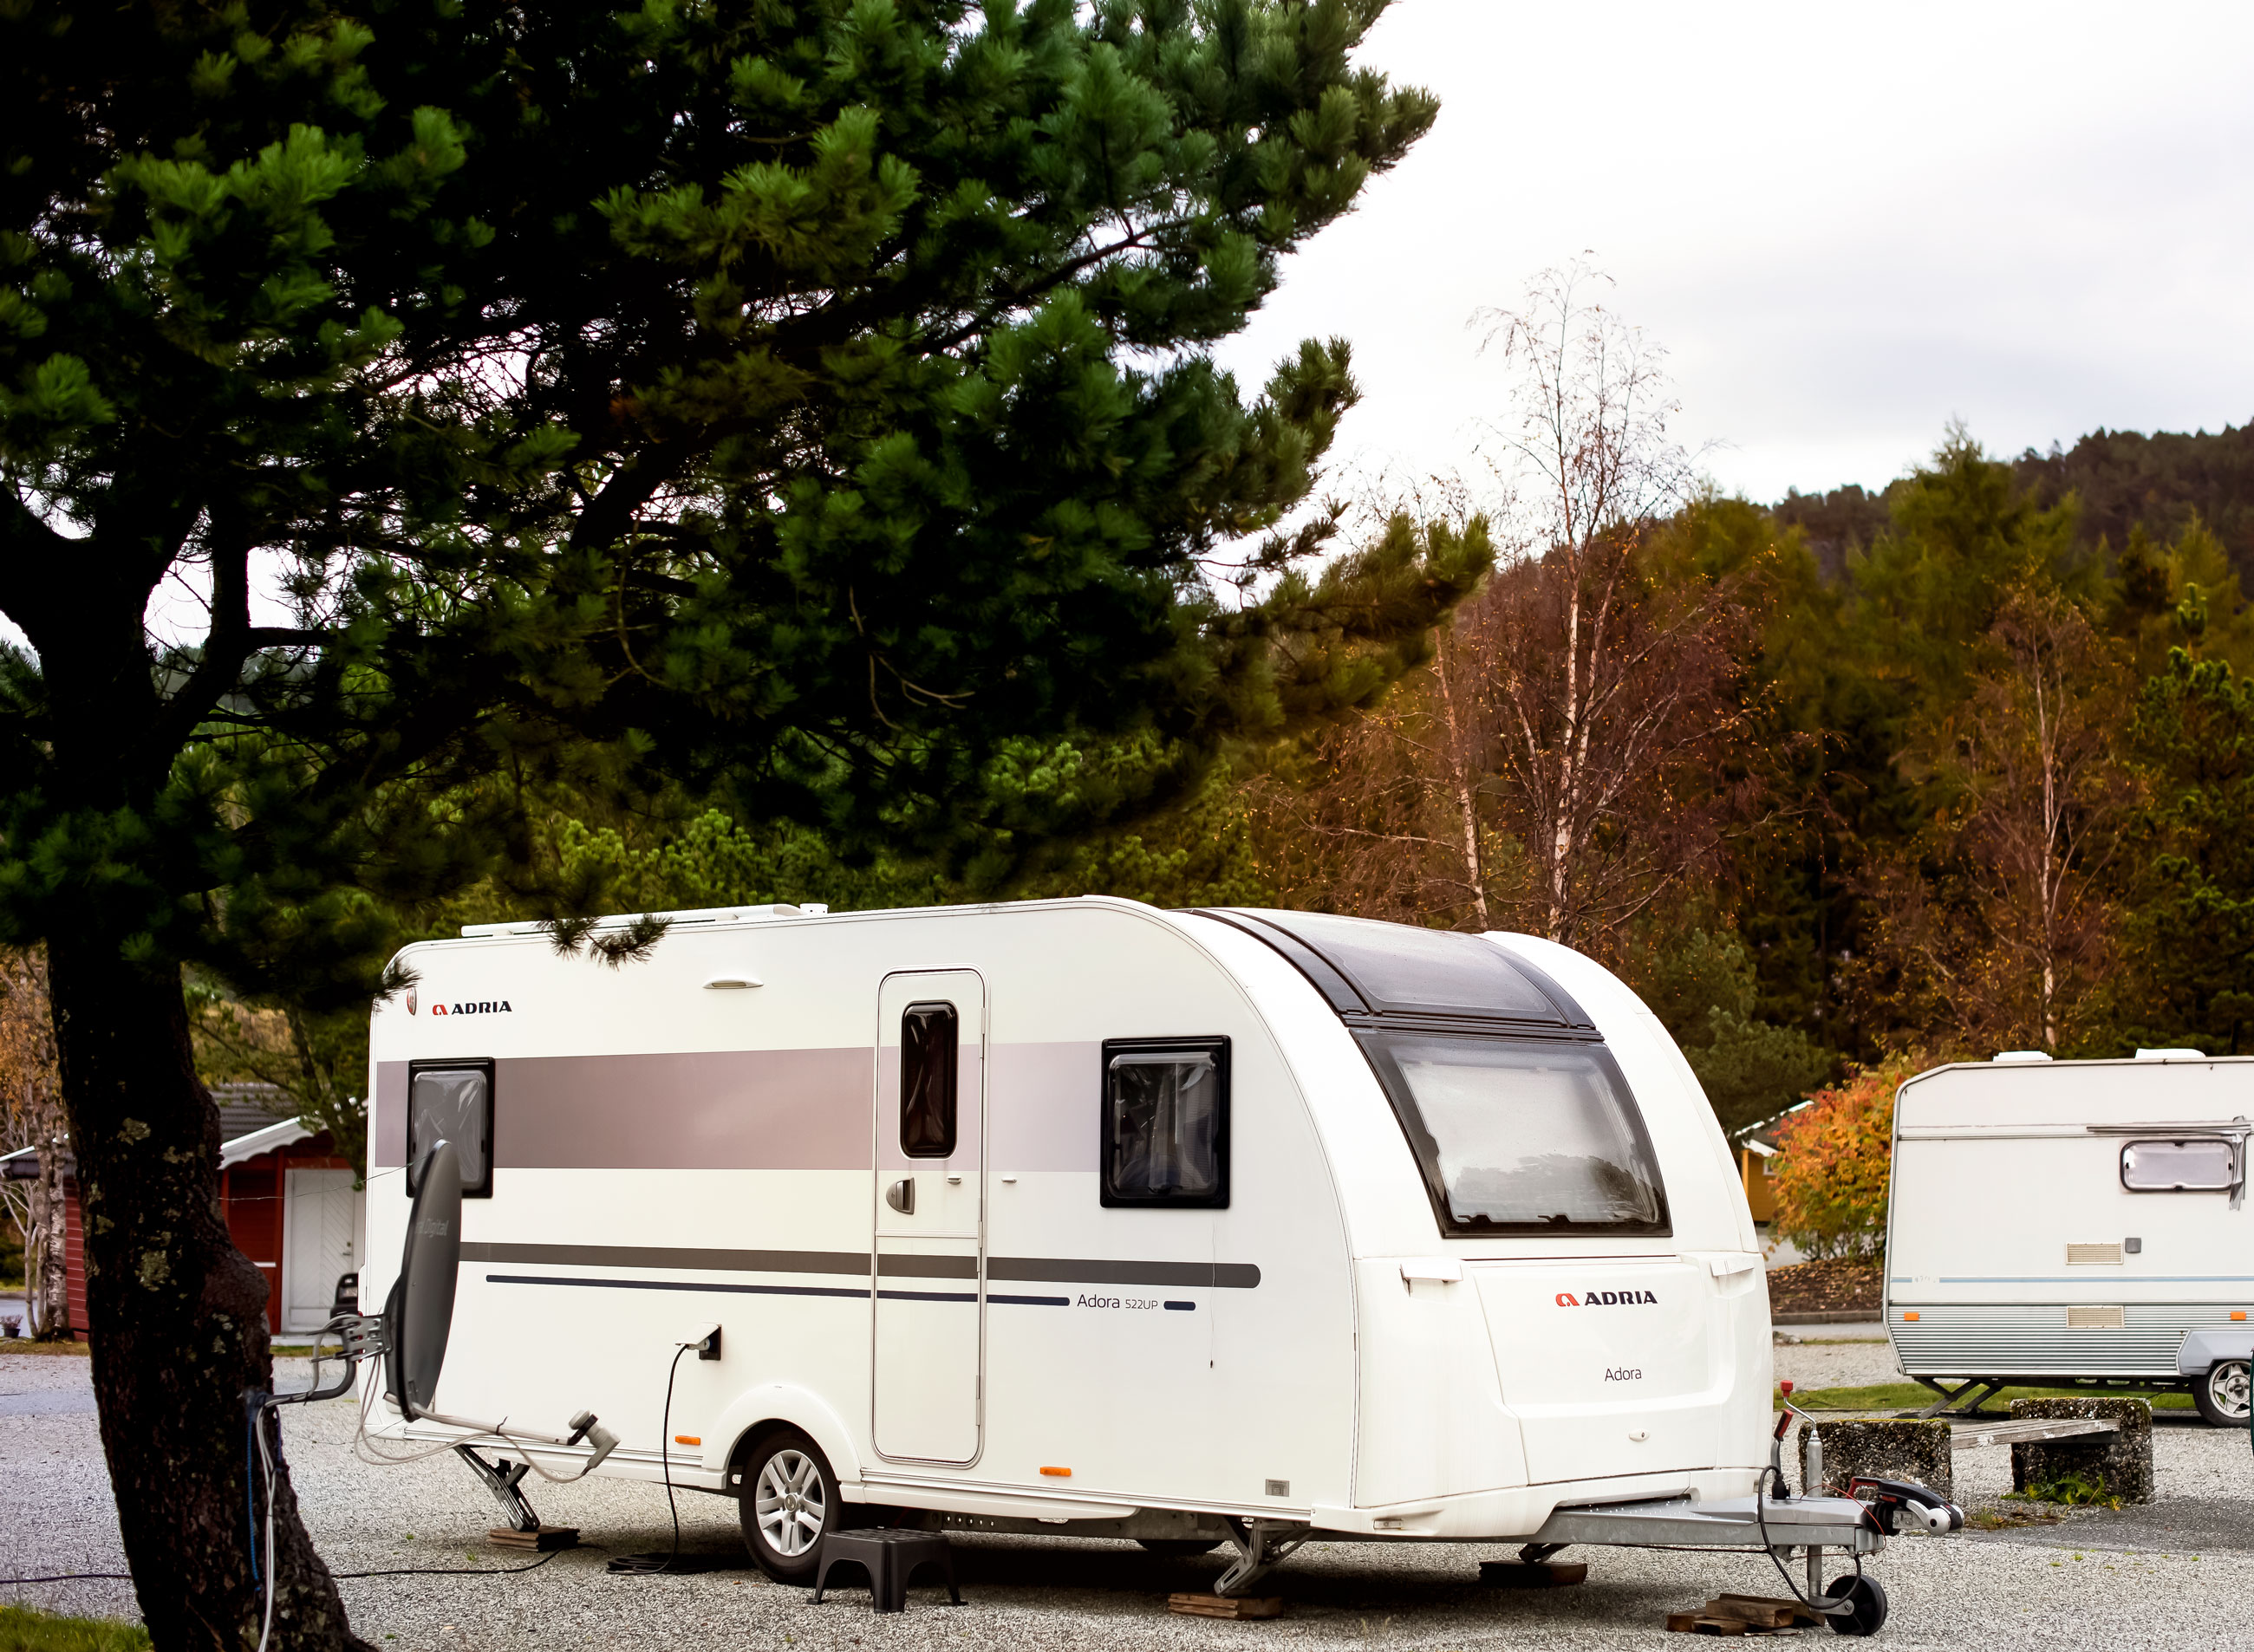 Caravan / camper / tent - Bergen Camping Park